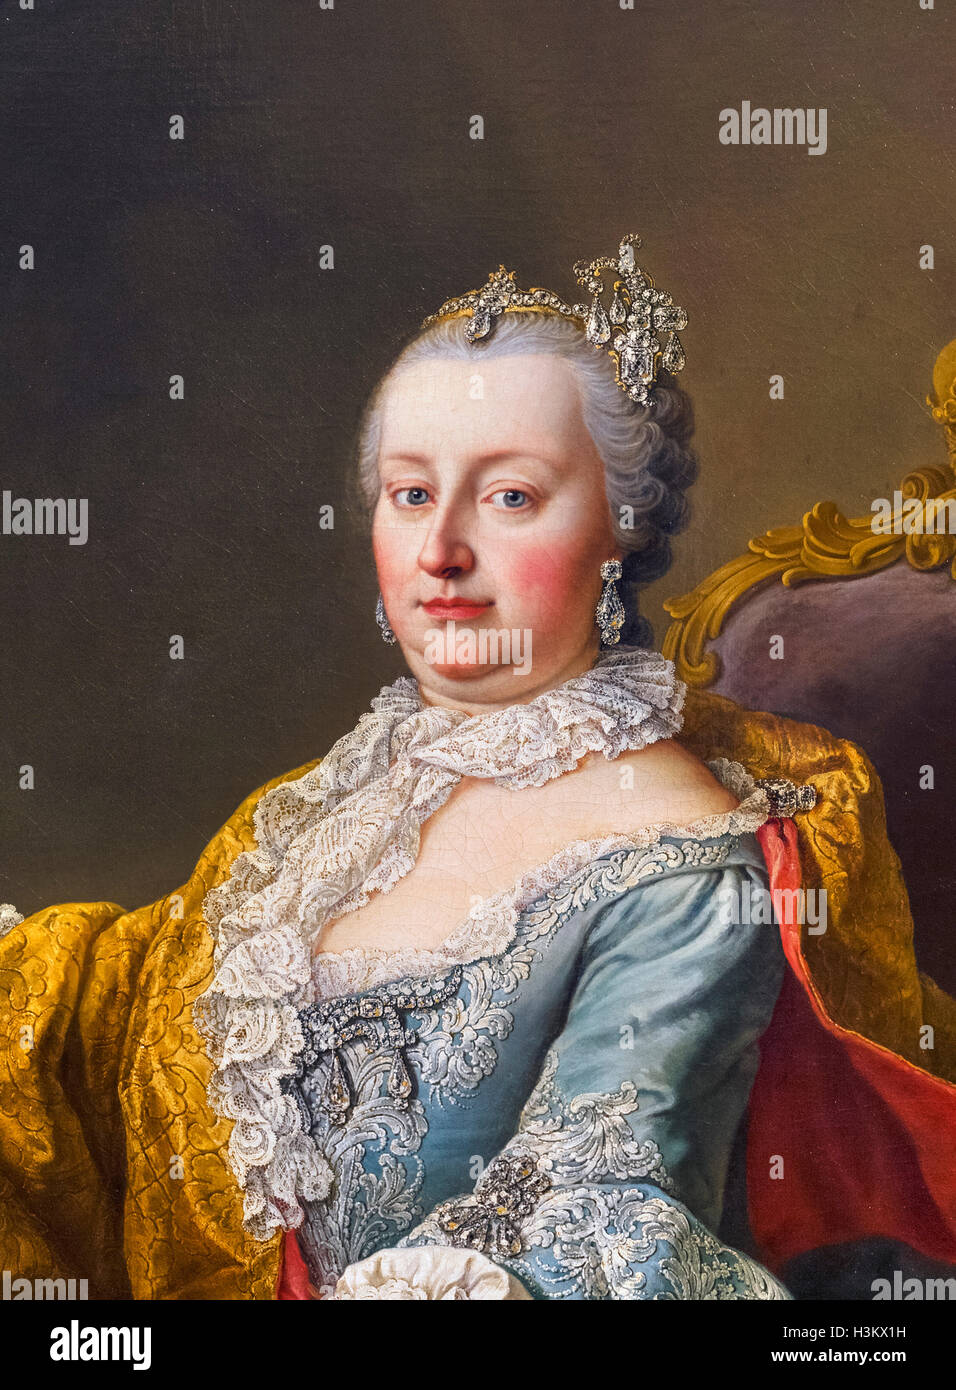 Maria Theresia. Porträt der Kaiserin Maria Theresa von Österreich (1717-1780) von Martin van Meytens, 1759. Stockfoto